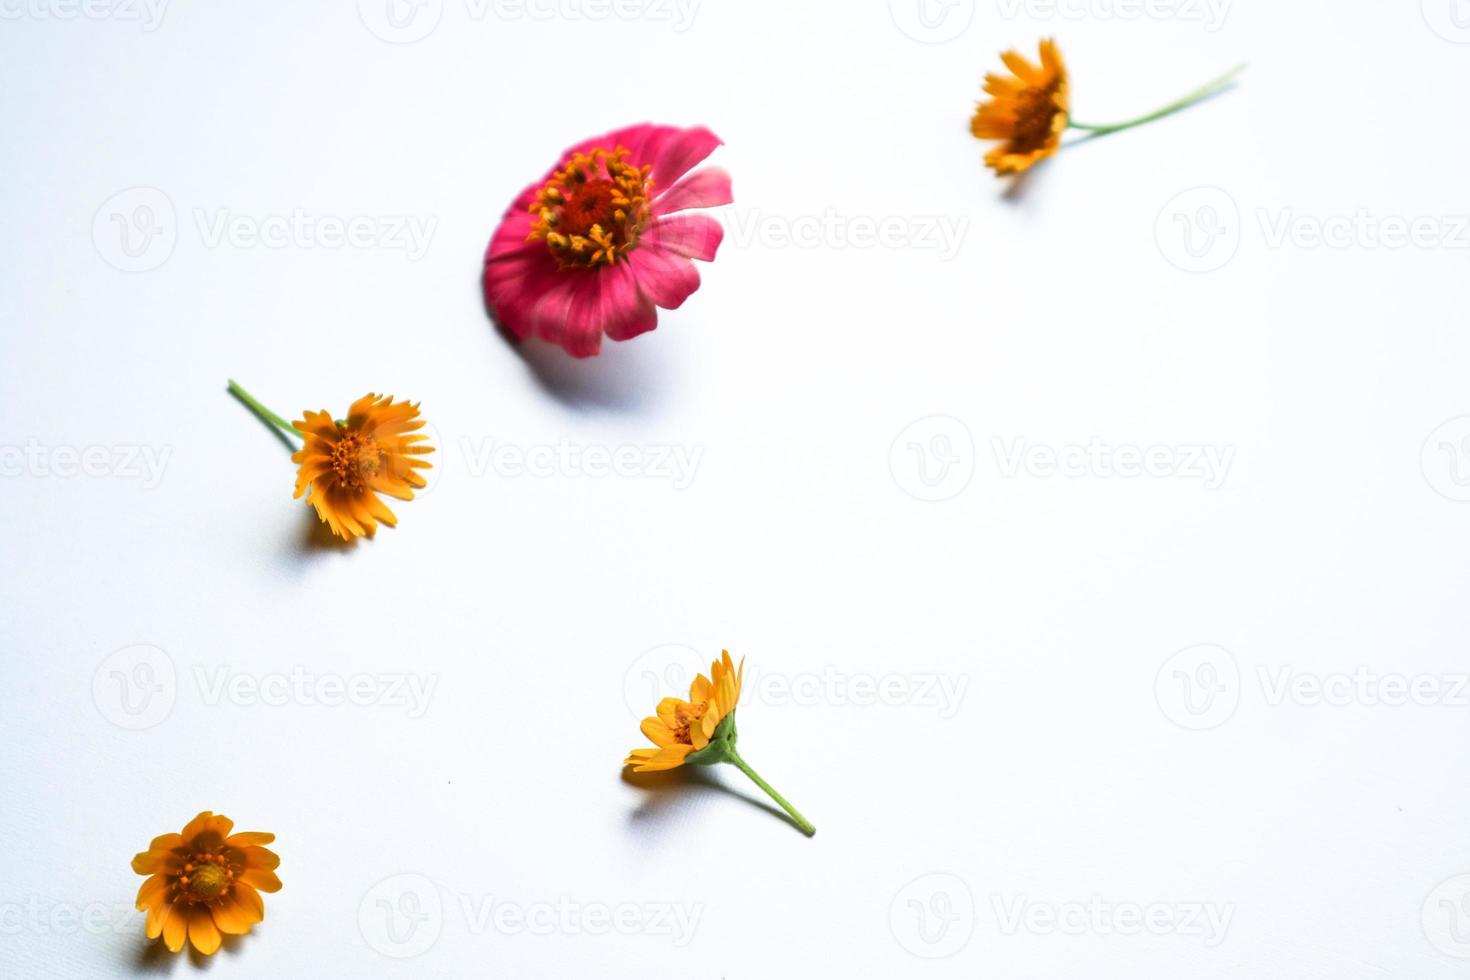 bela composição de flor de zínia em fundo branco isolado. postura plana, vista superior, cópia plana de natureza morta. foto